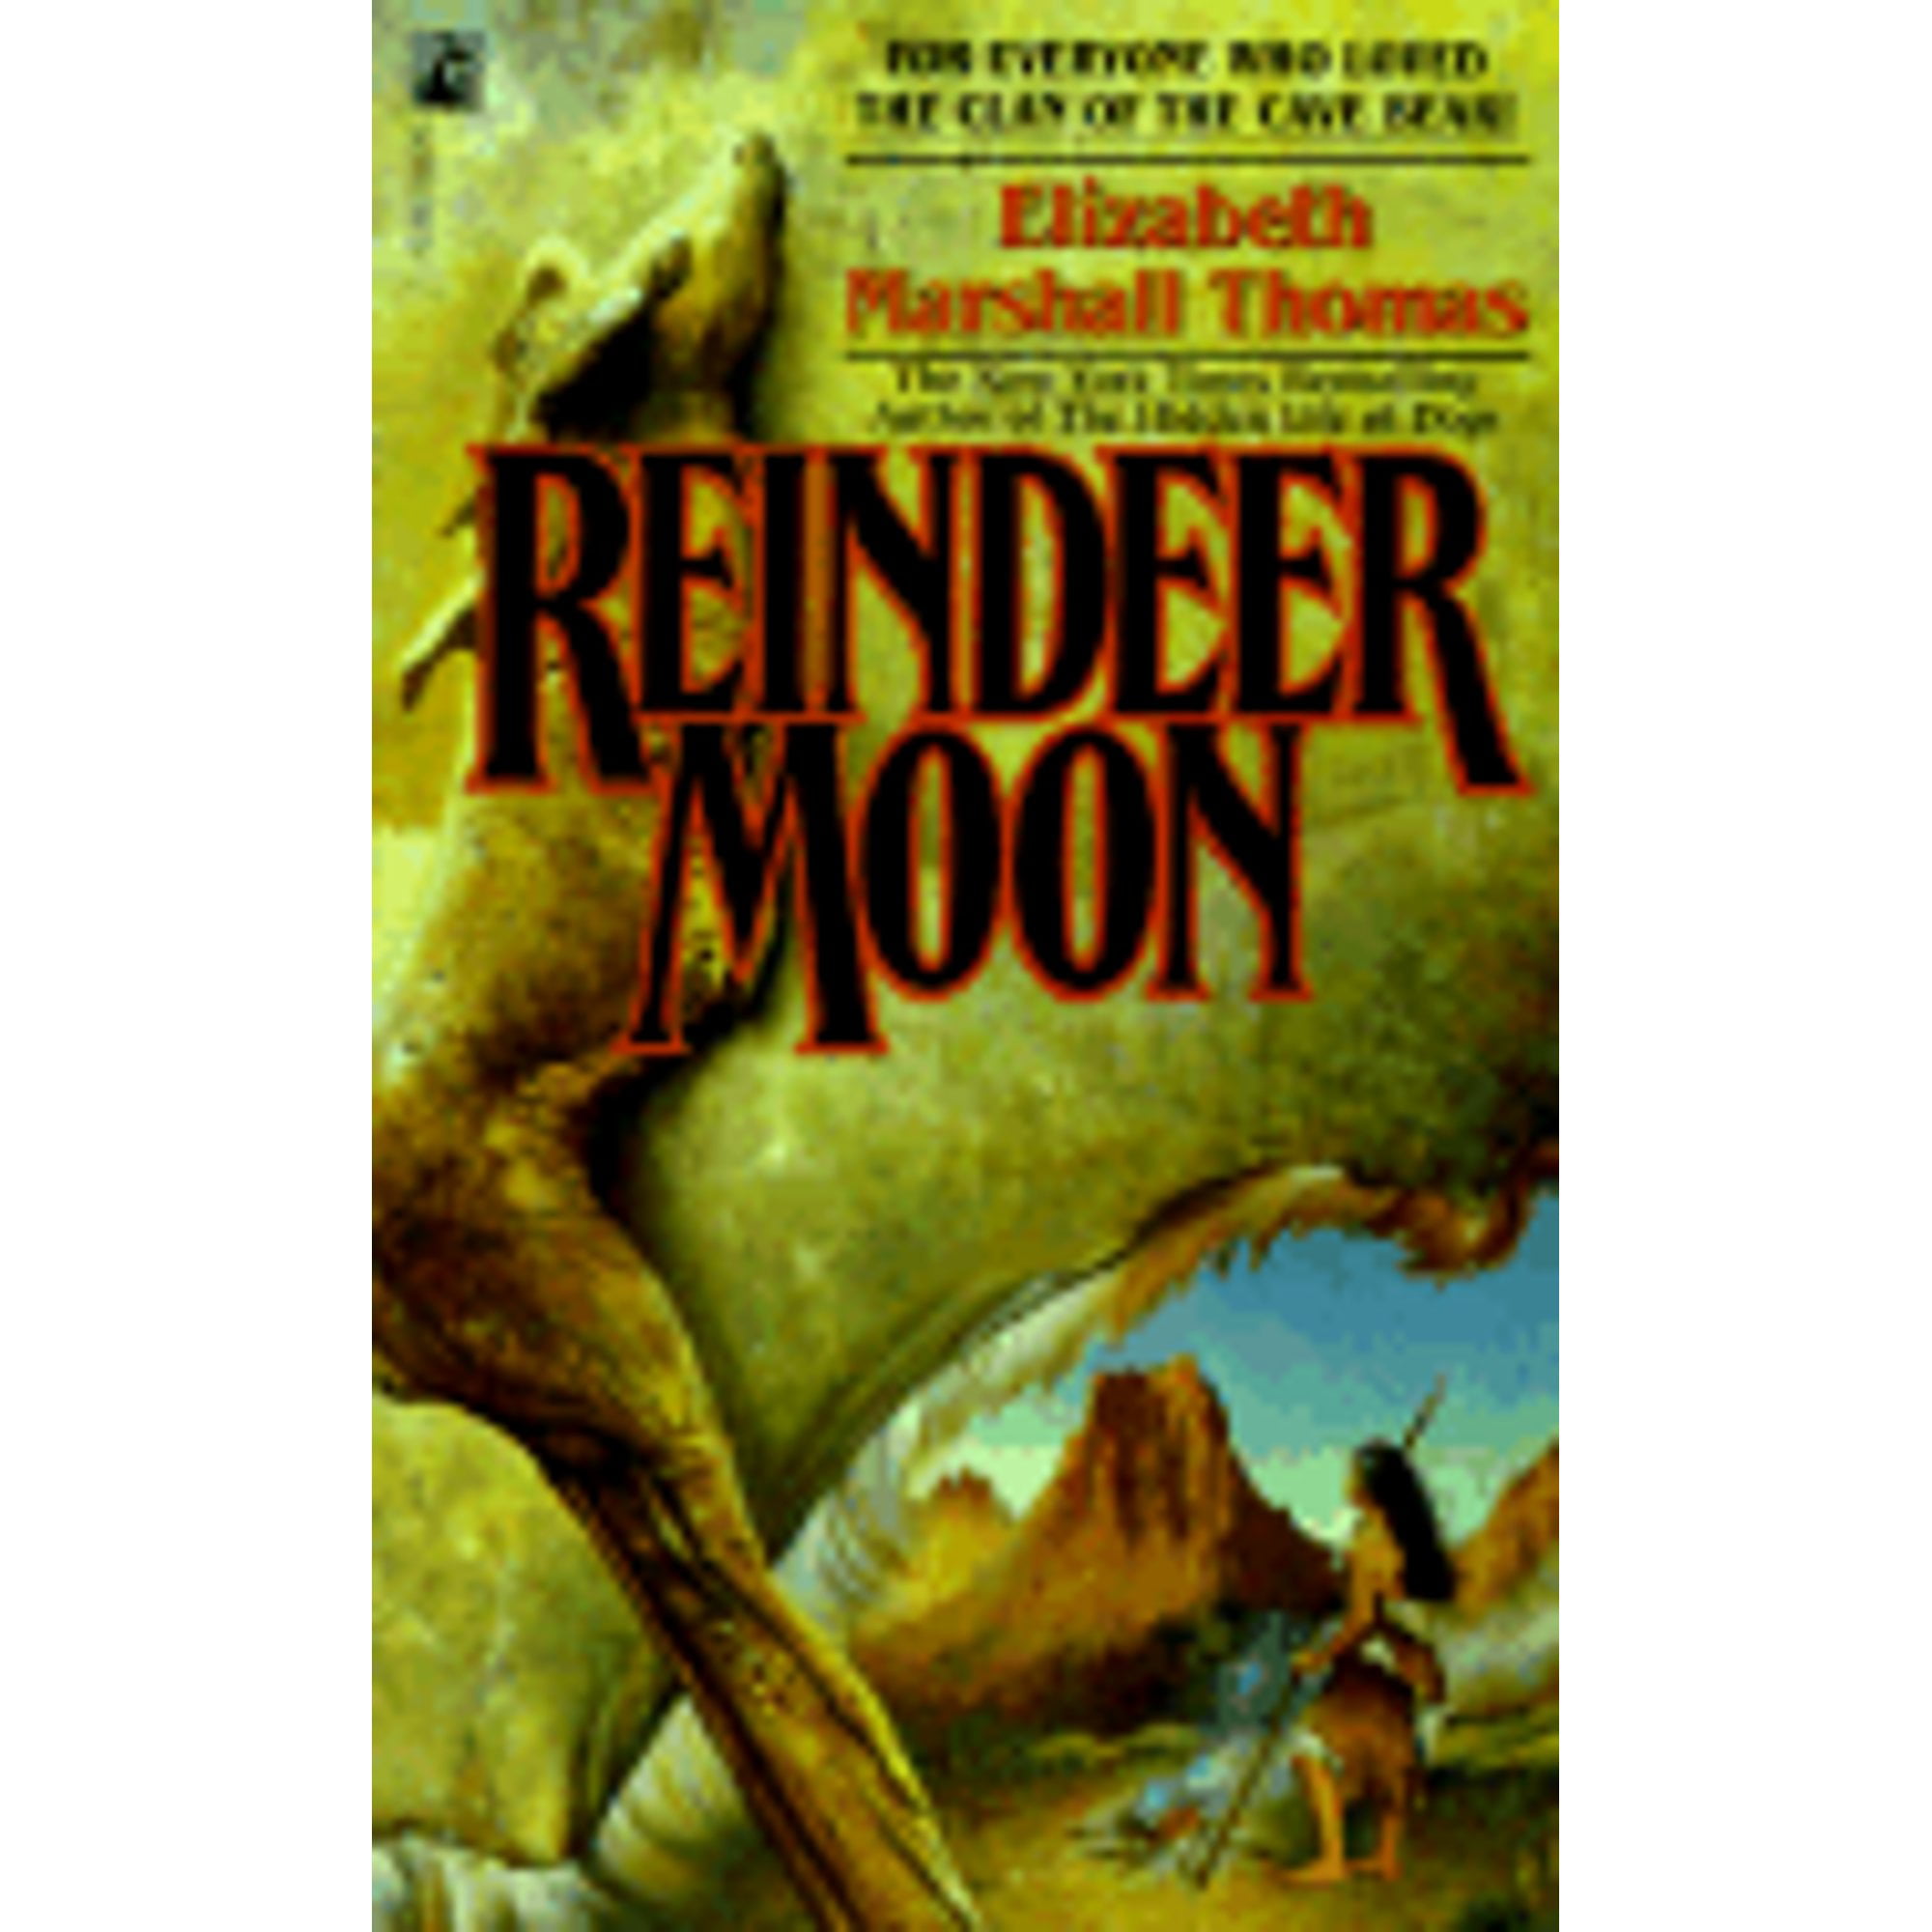 Pre-Owned Reindeer Moon: Moon (Paperback 9780671741891) by Elizabeth Marshall Thomas